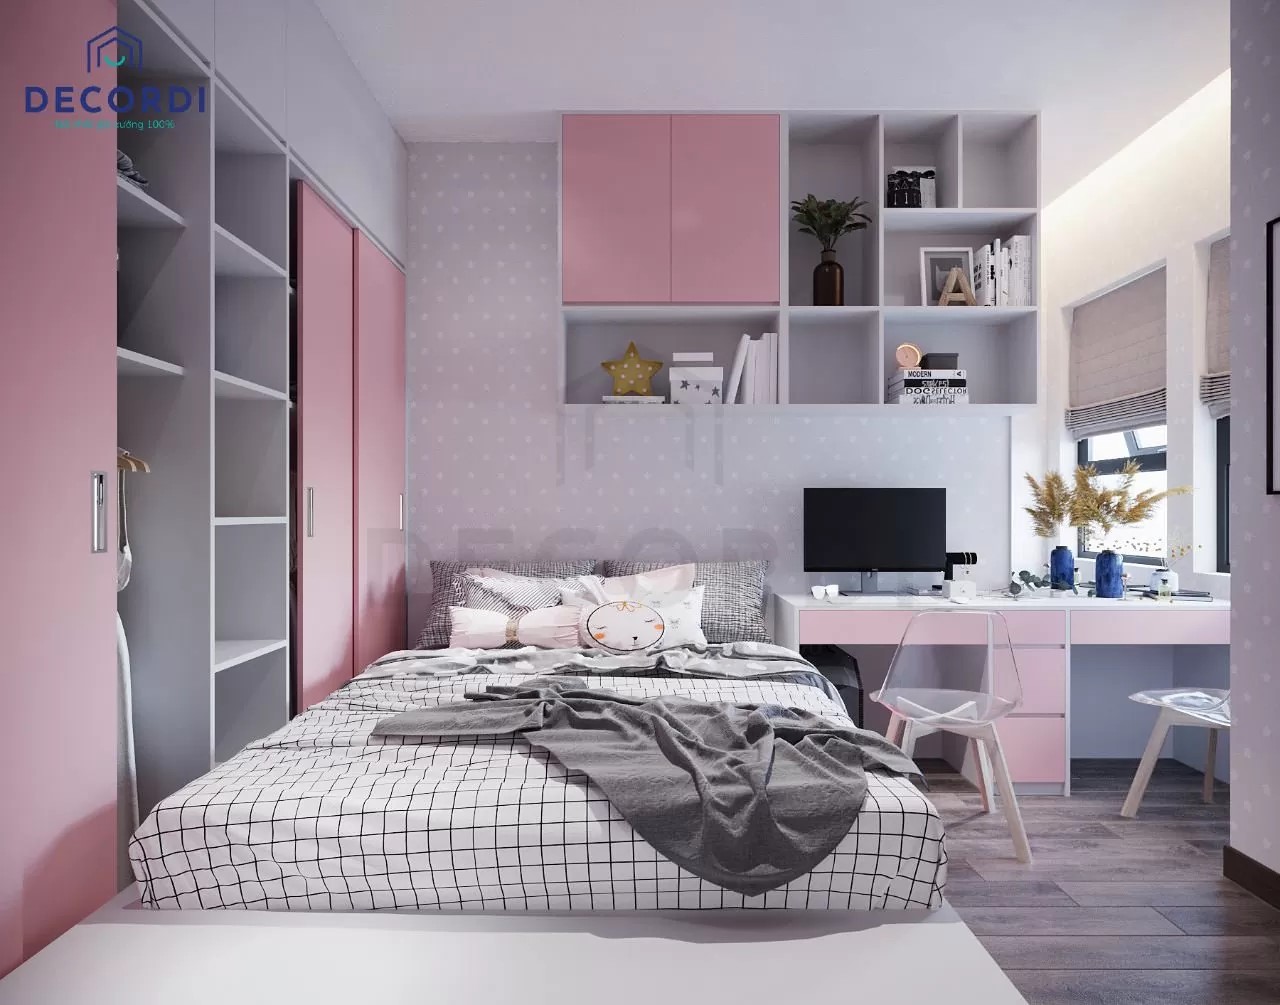 Phòng ngủ hiện đại cá tính với sự phối hợp hài hòa giữa hồng và xám